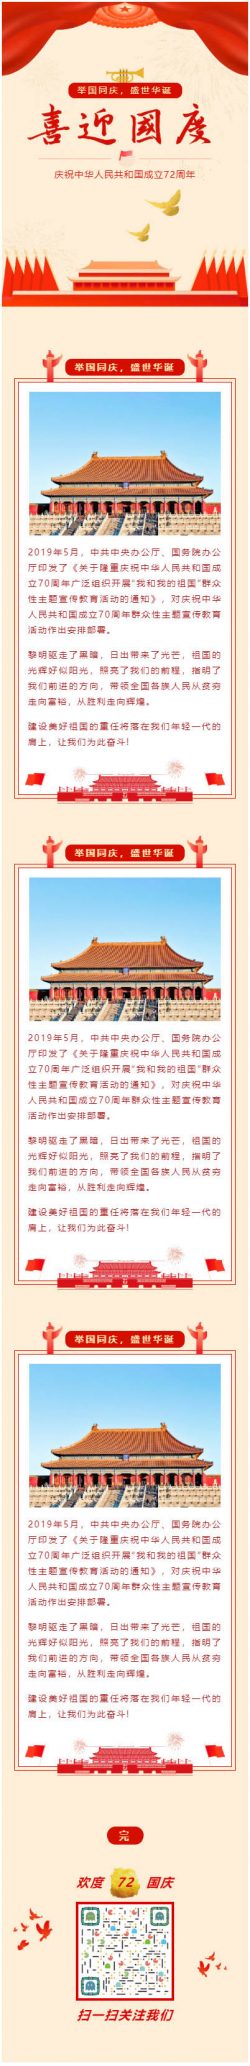 公众号国庆节微信模板庆祝中华人民共和国成立72周年订阅号推送图文素材